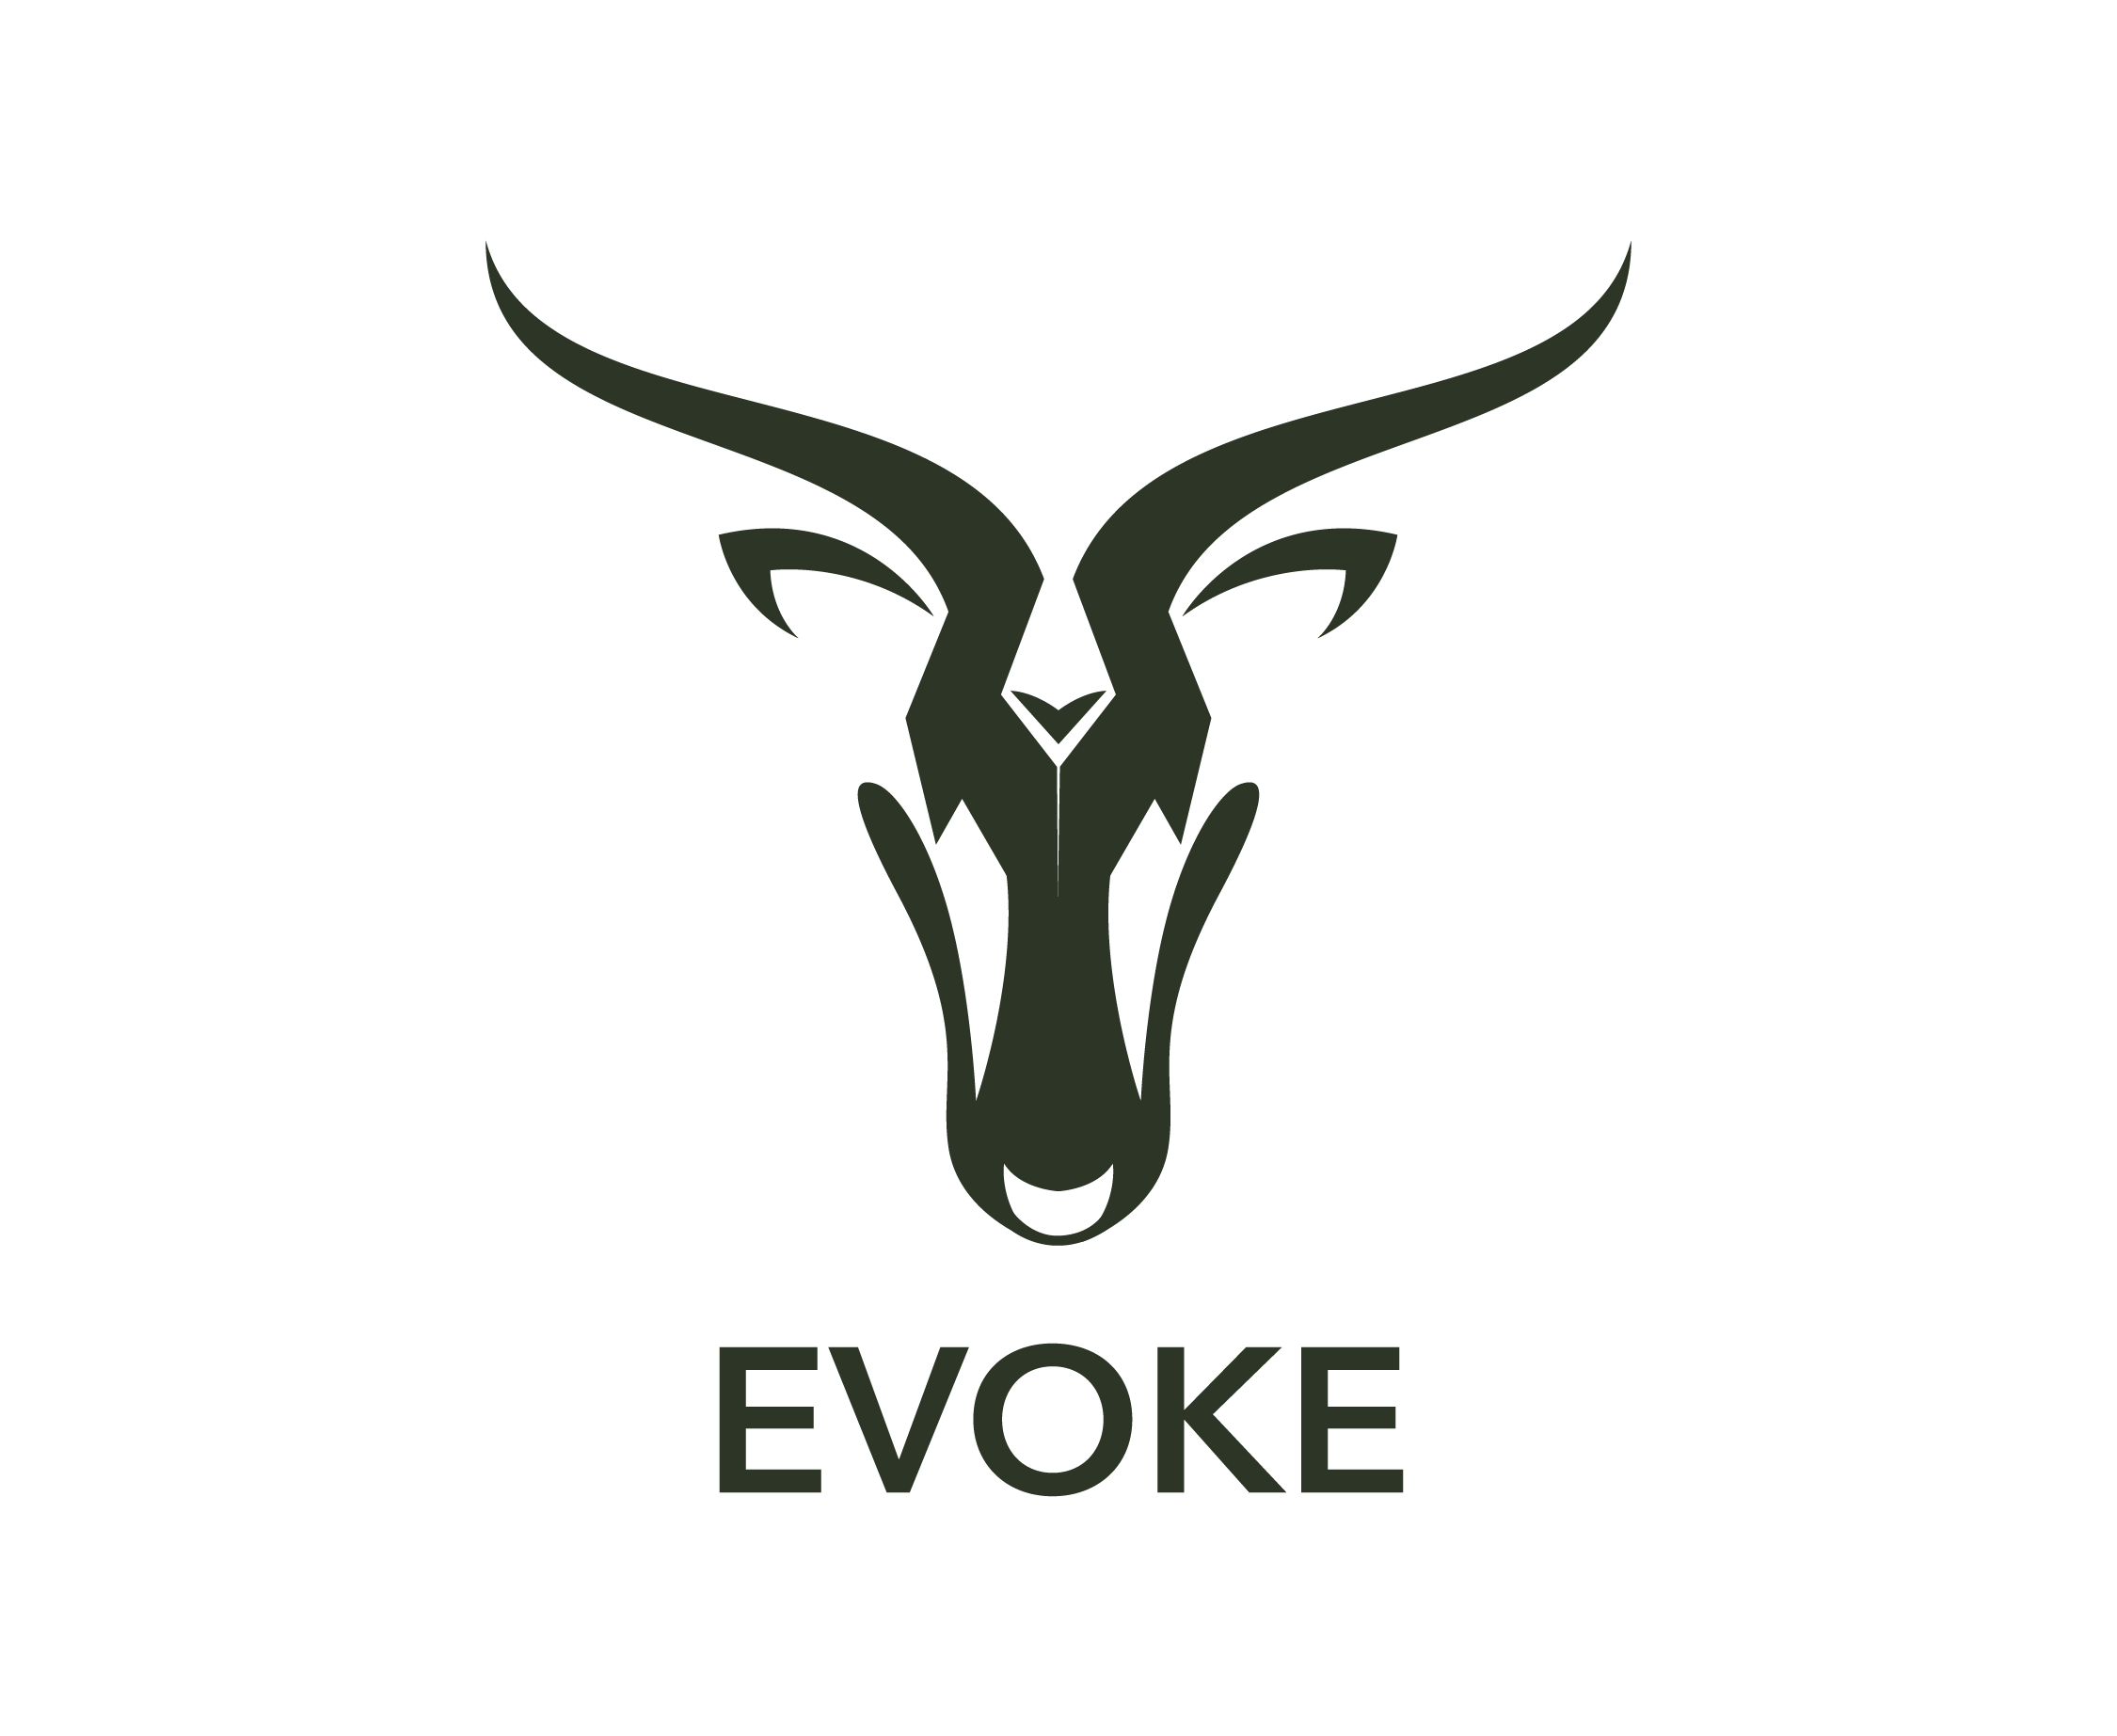 Evoke-01